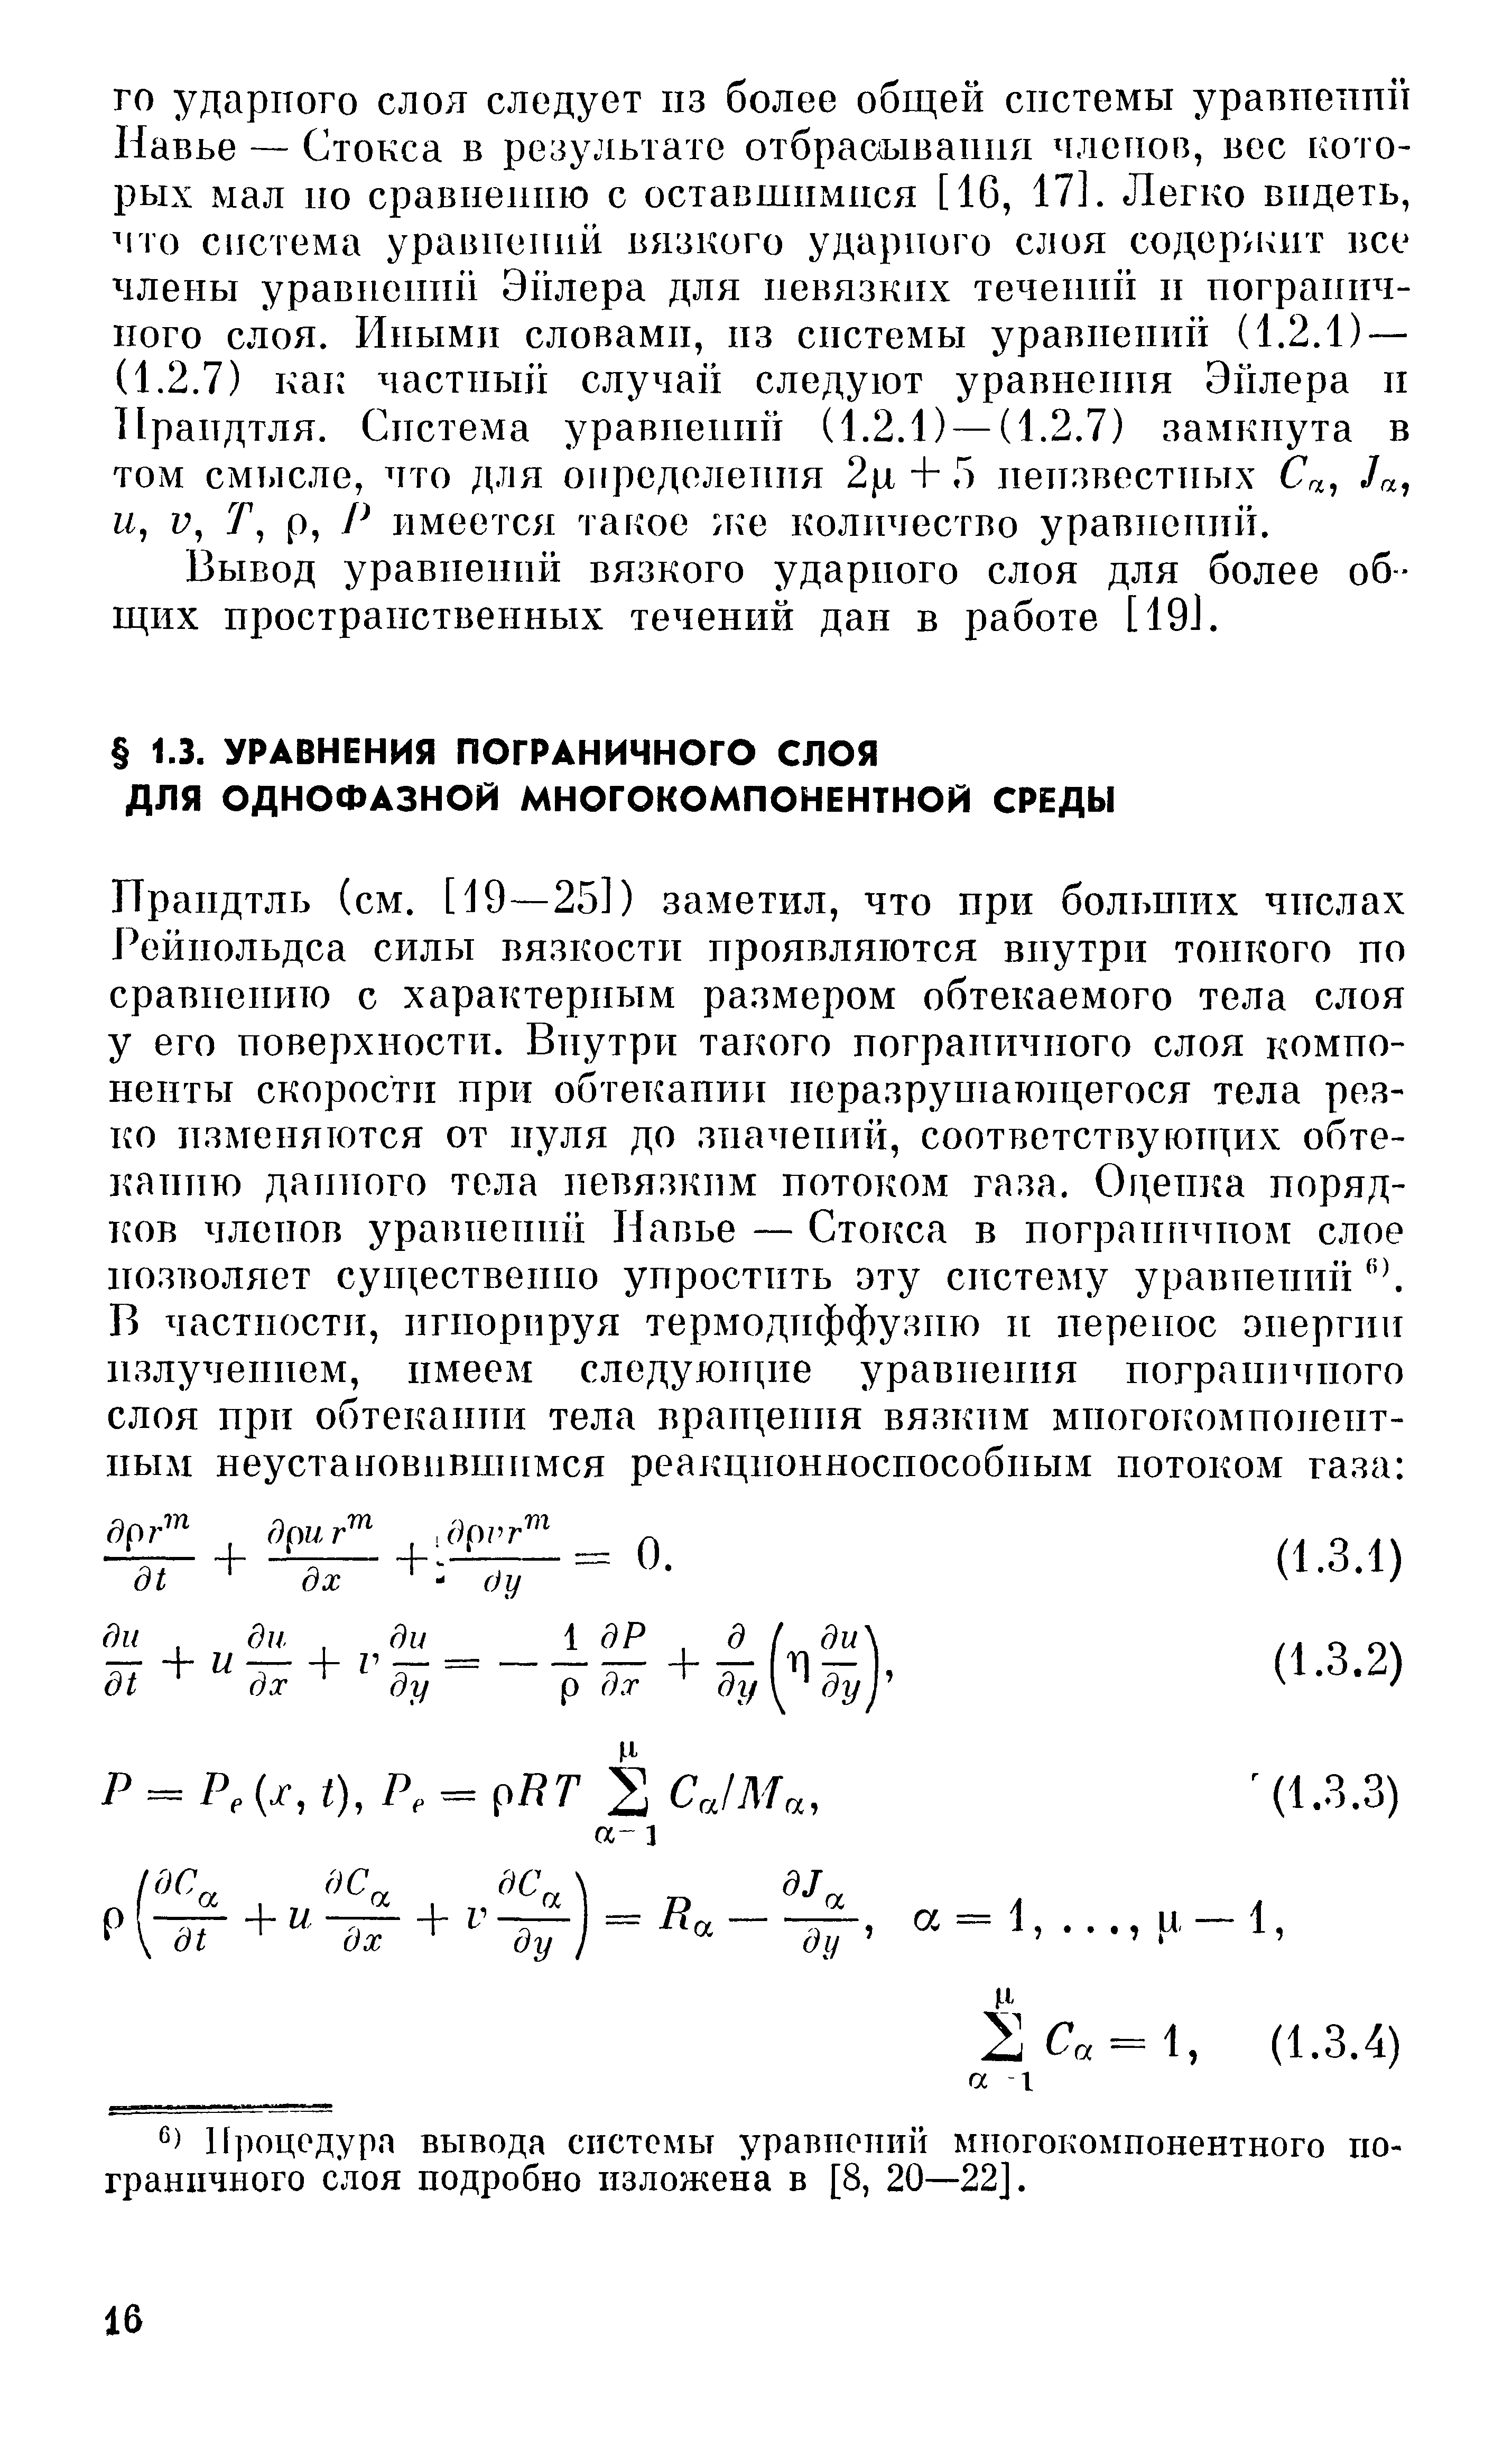 Вывод уравнений вязкого ударного слоя для более общих пространственных течений дан в работе [19J.
